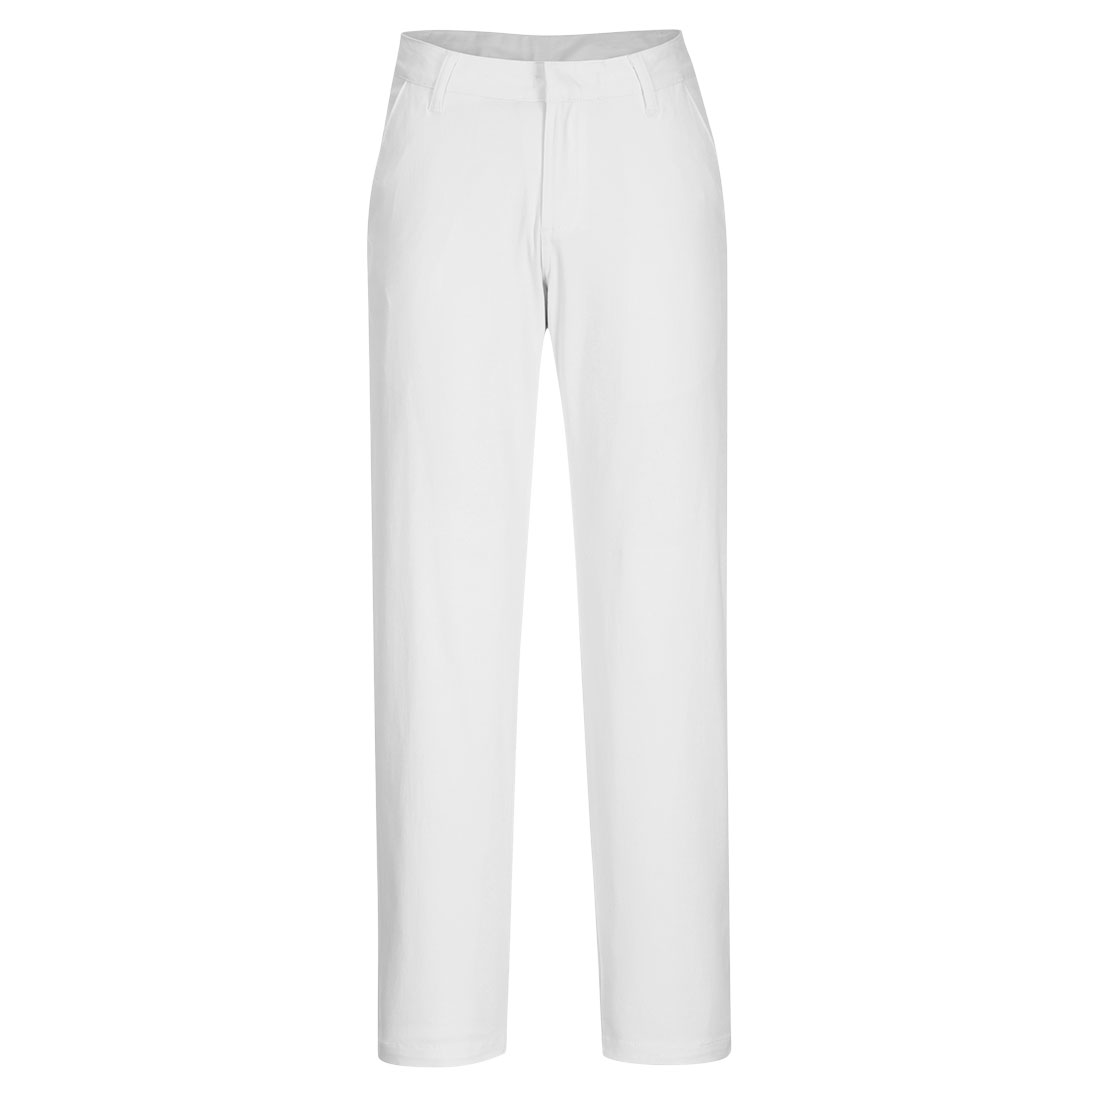 Women's Slim Chino Trouser - White - AUK Hygiene